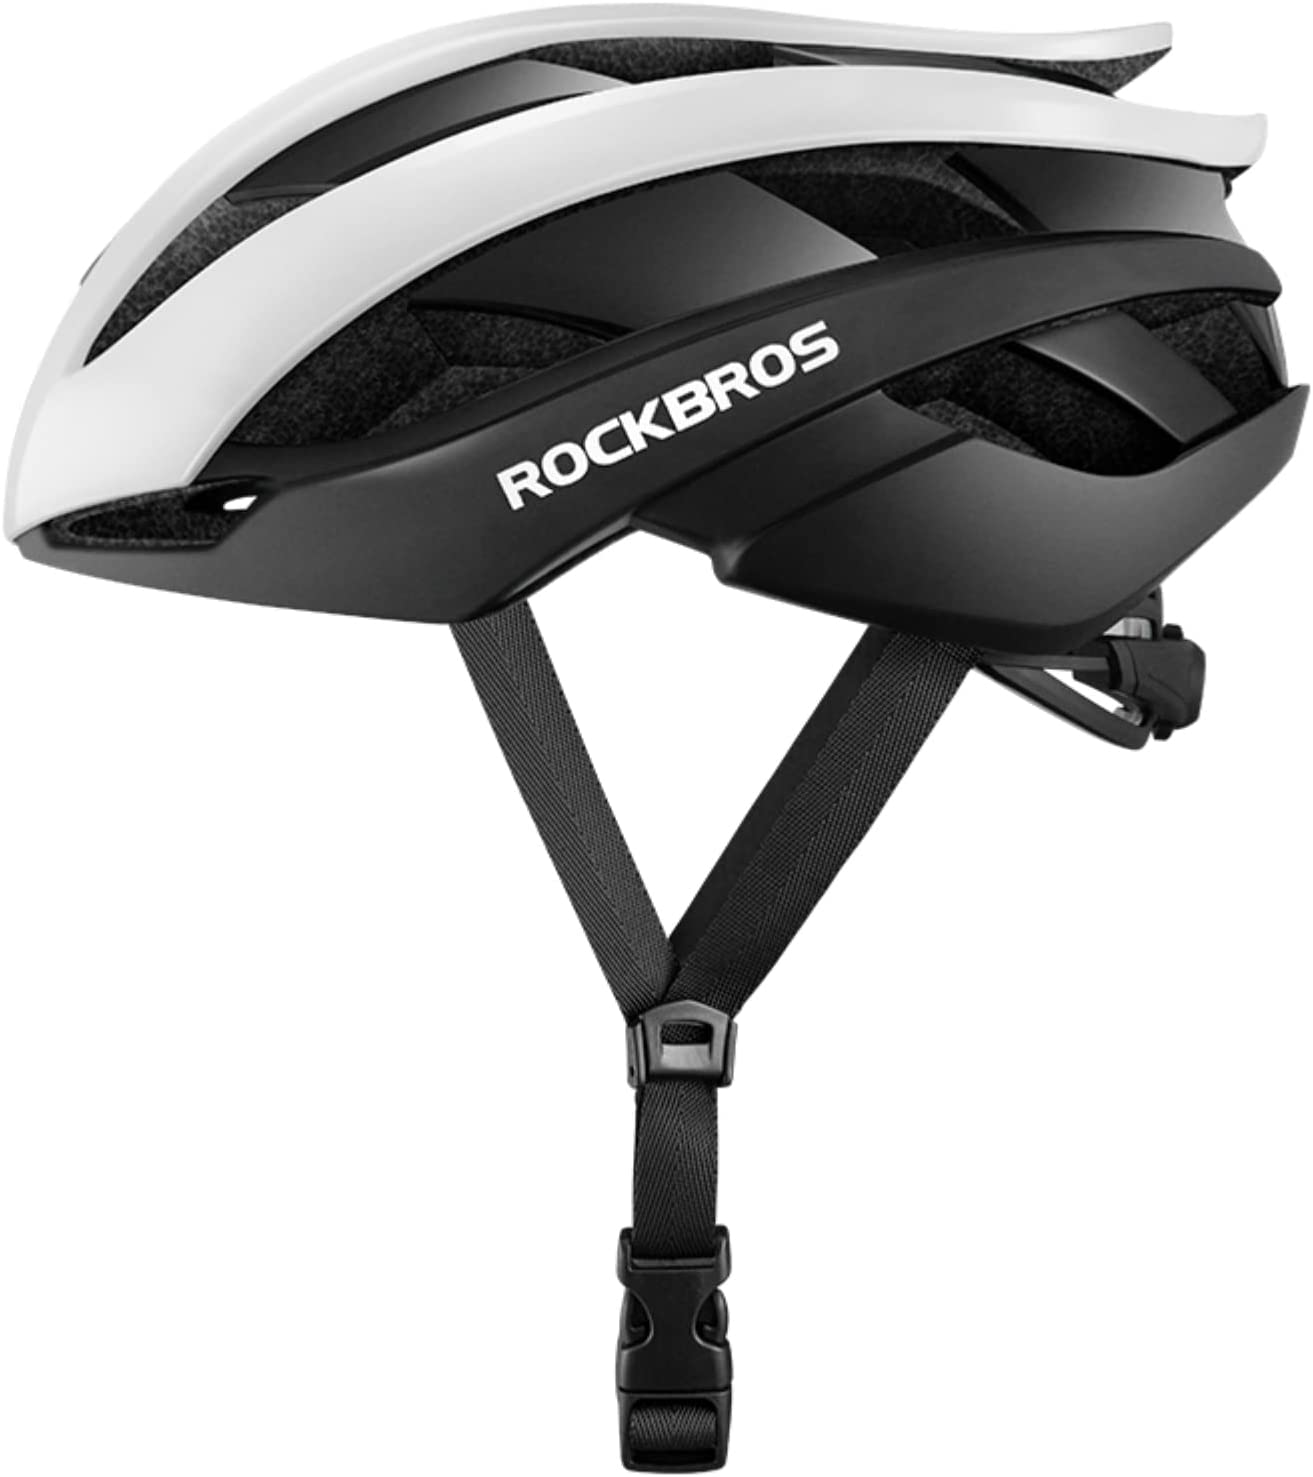 ROCKBROS RB-01 Adult Bike Helmet Lightweight Comfortable Adjustable